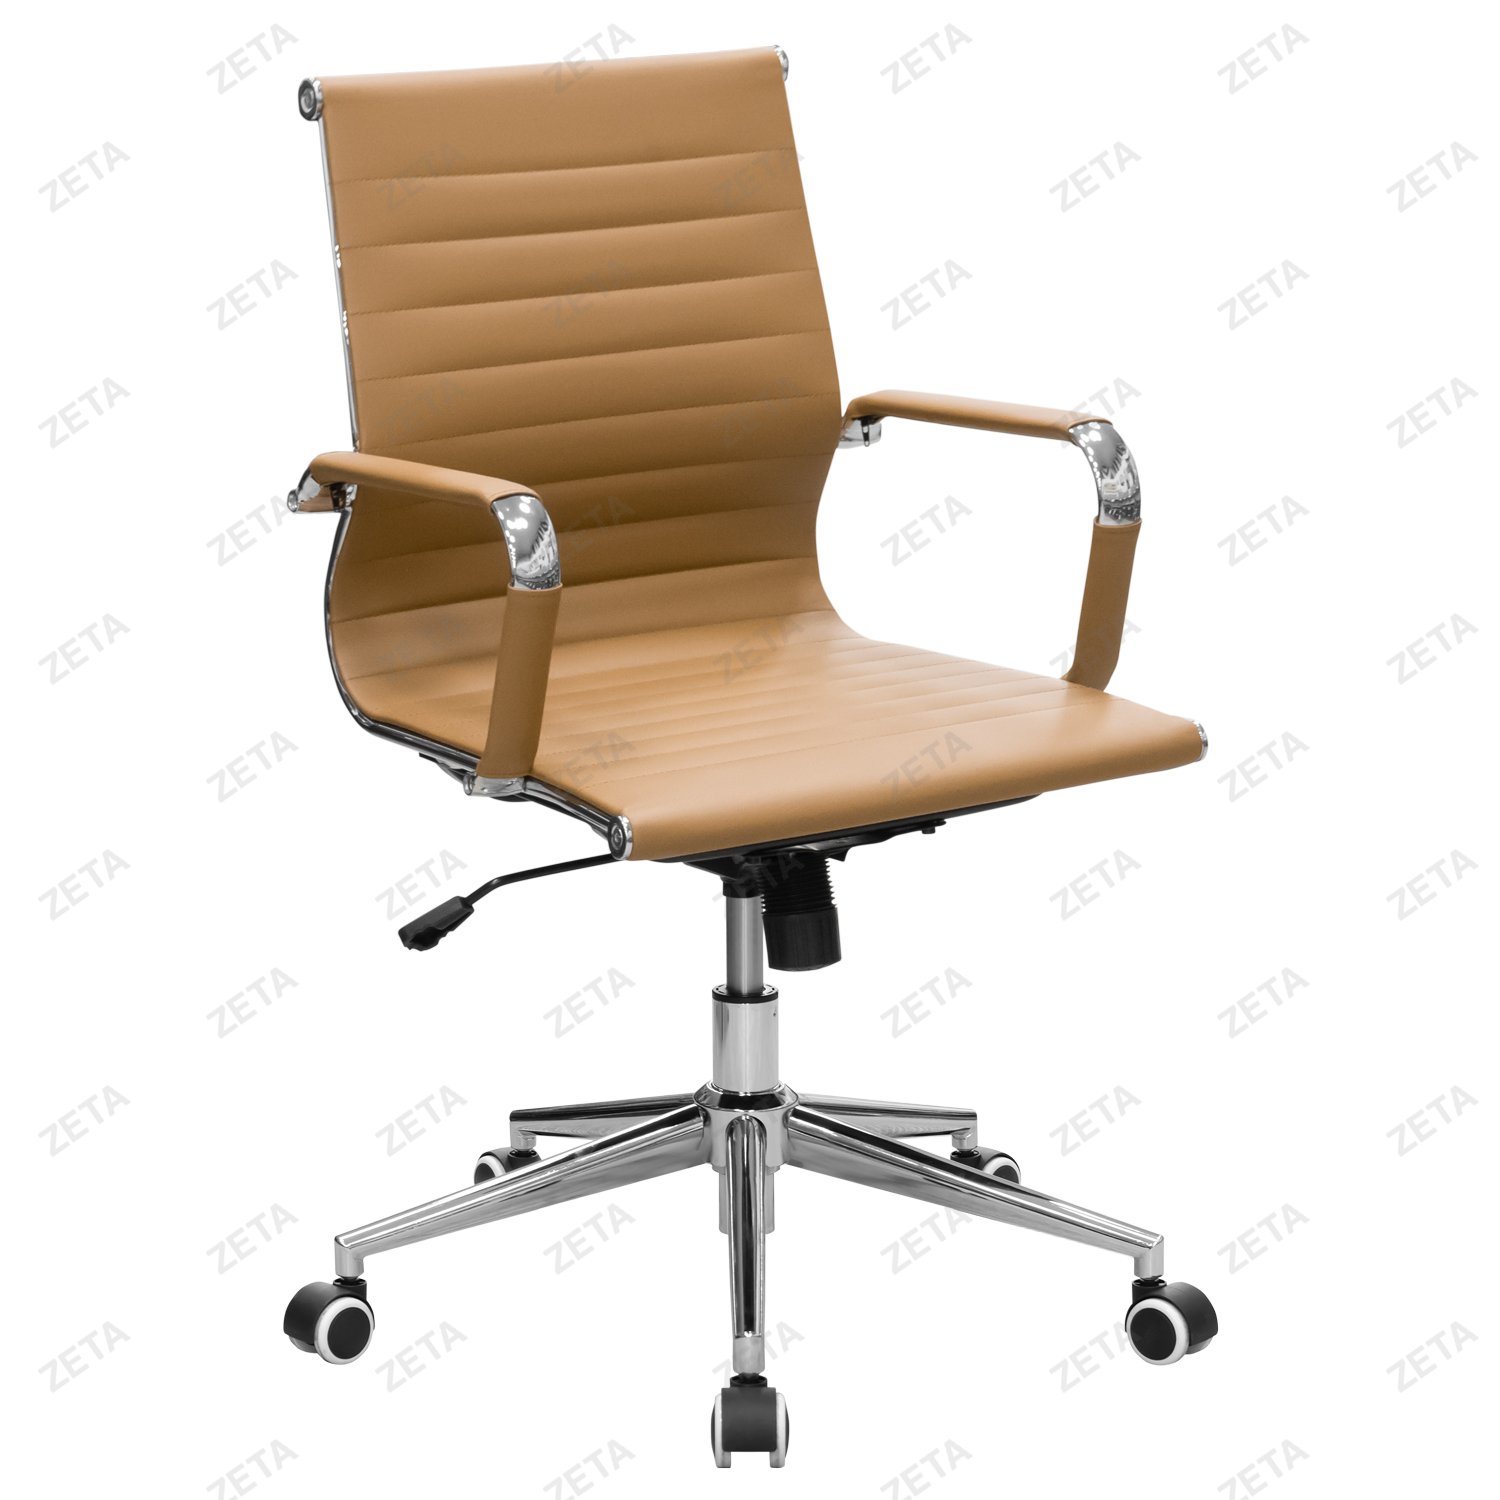 Кресло №5728-L (рыжее) - изображение 1